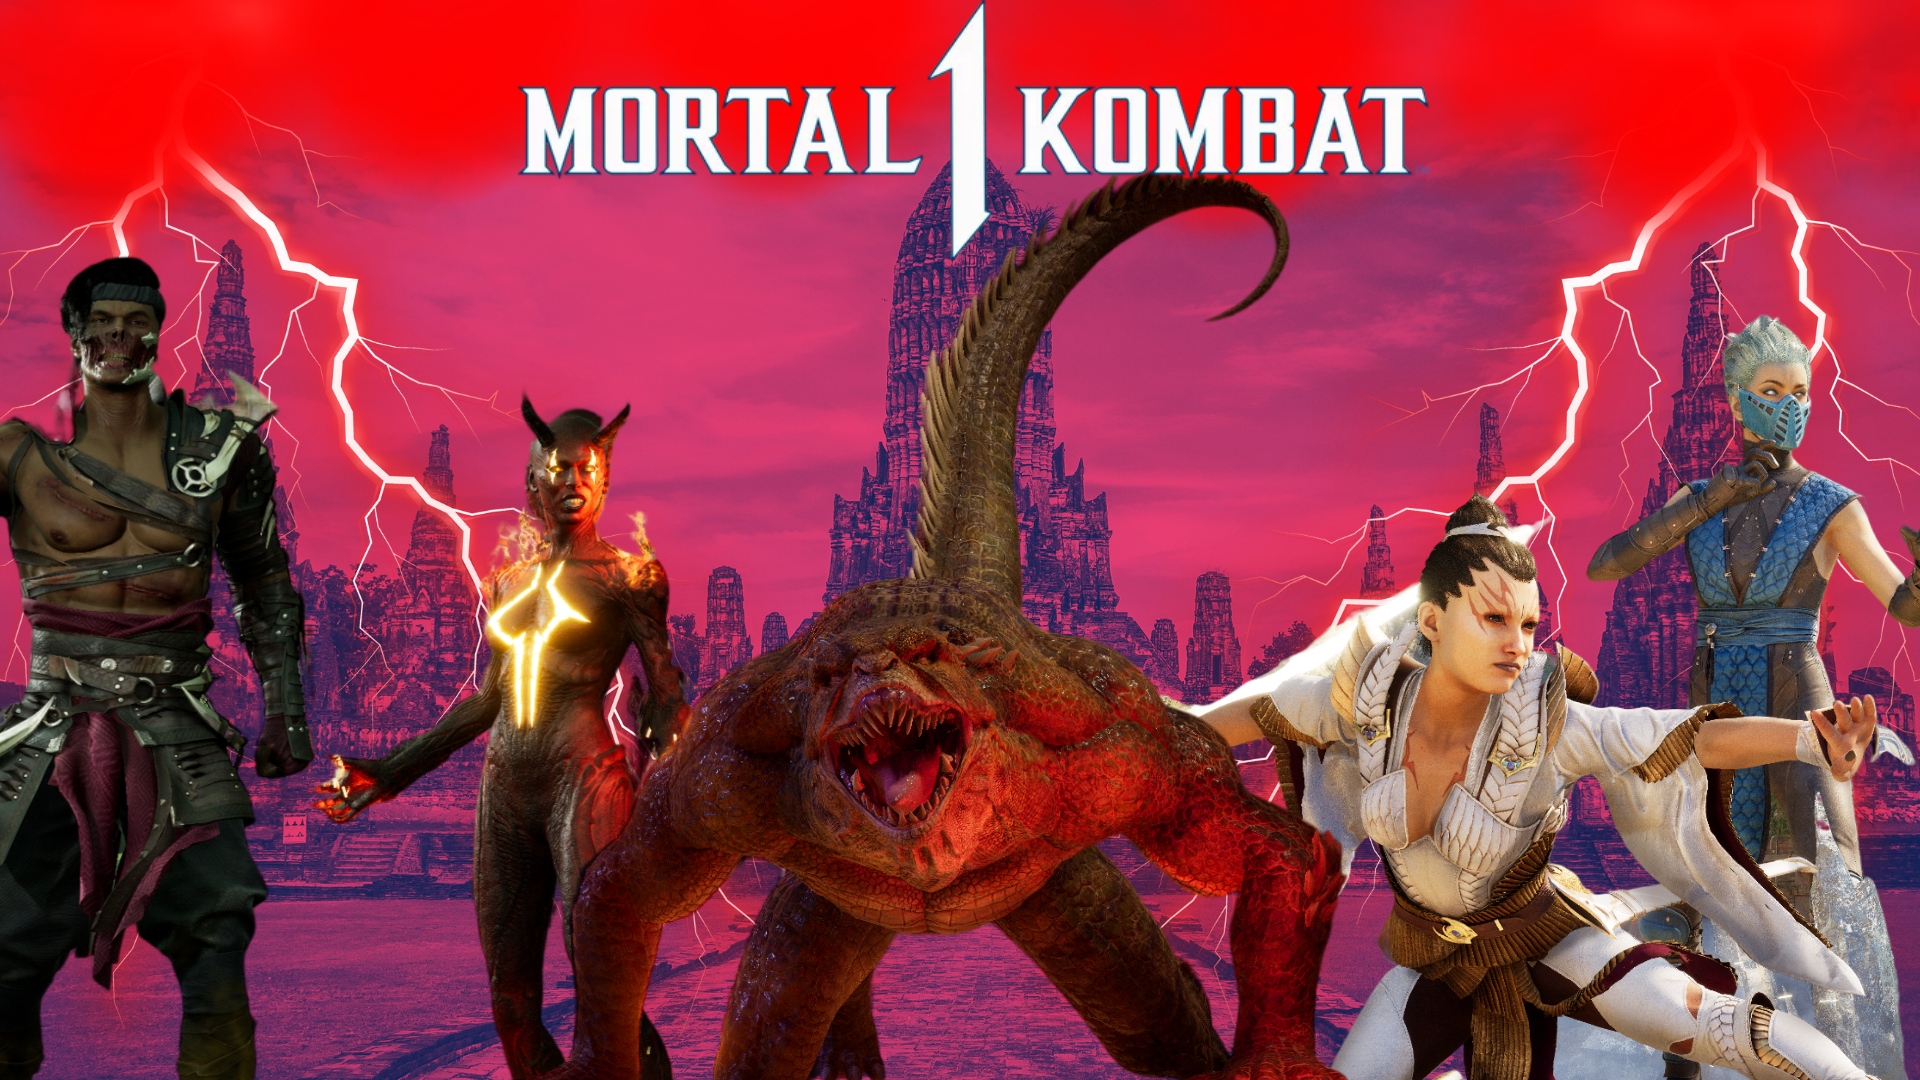 Mortal Kombat 1 Character Trailer Stars Reptile and Ashrah